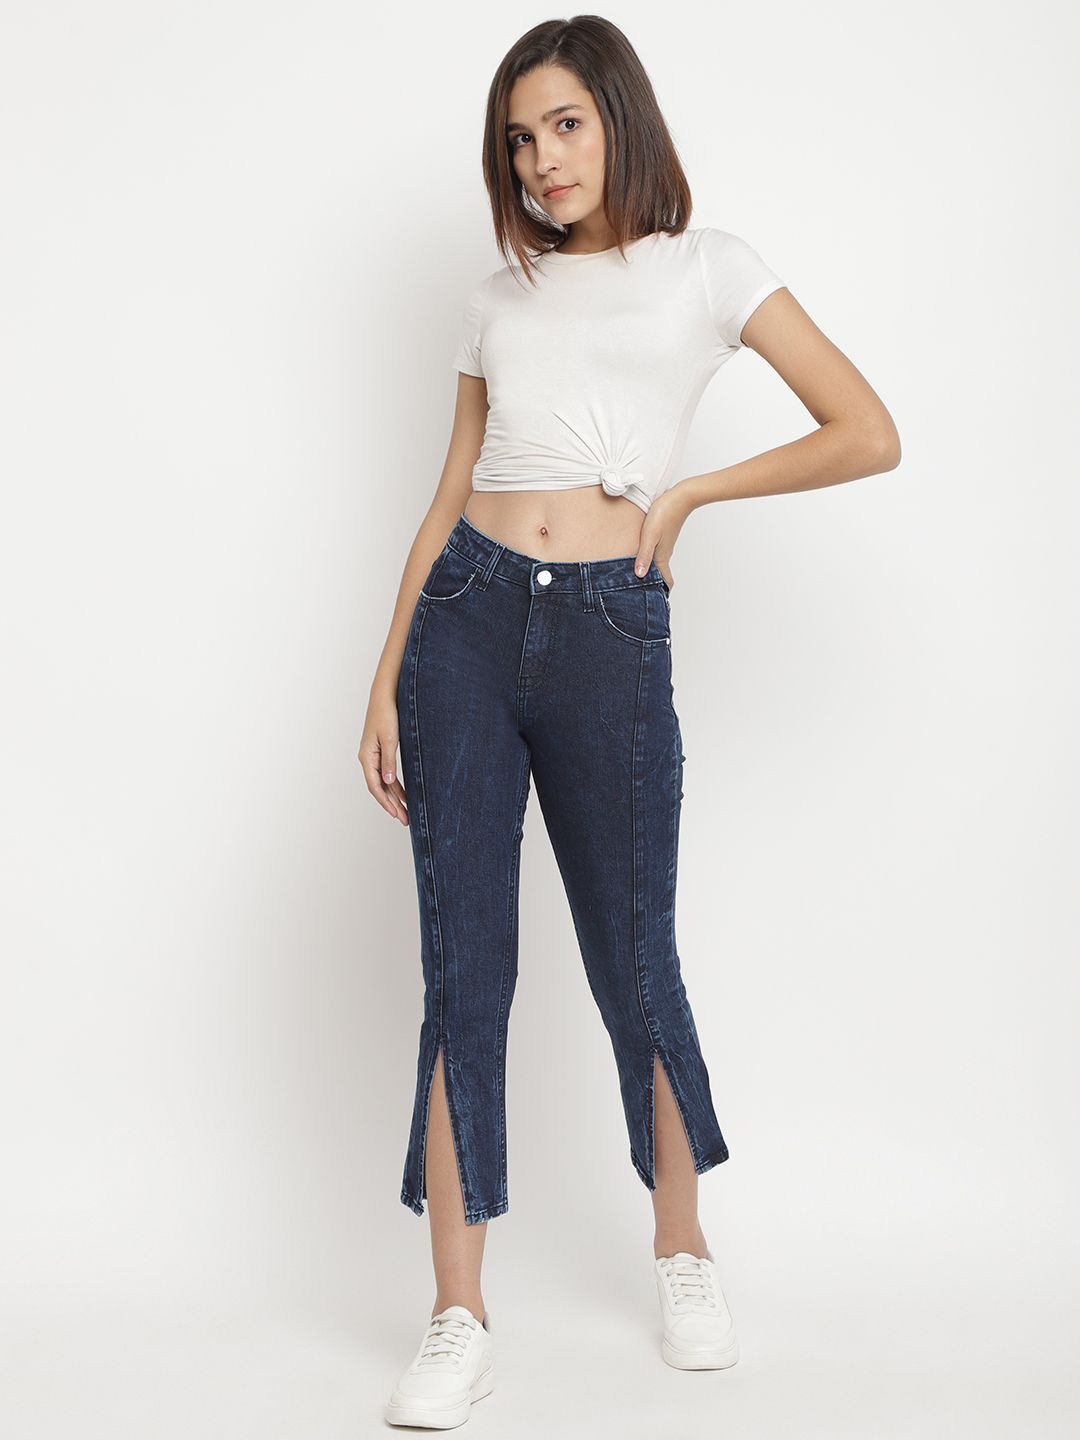 Belliskey Women Blue Slim Fit Mid-Rise Clean Look Jeans Price in India